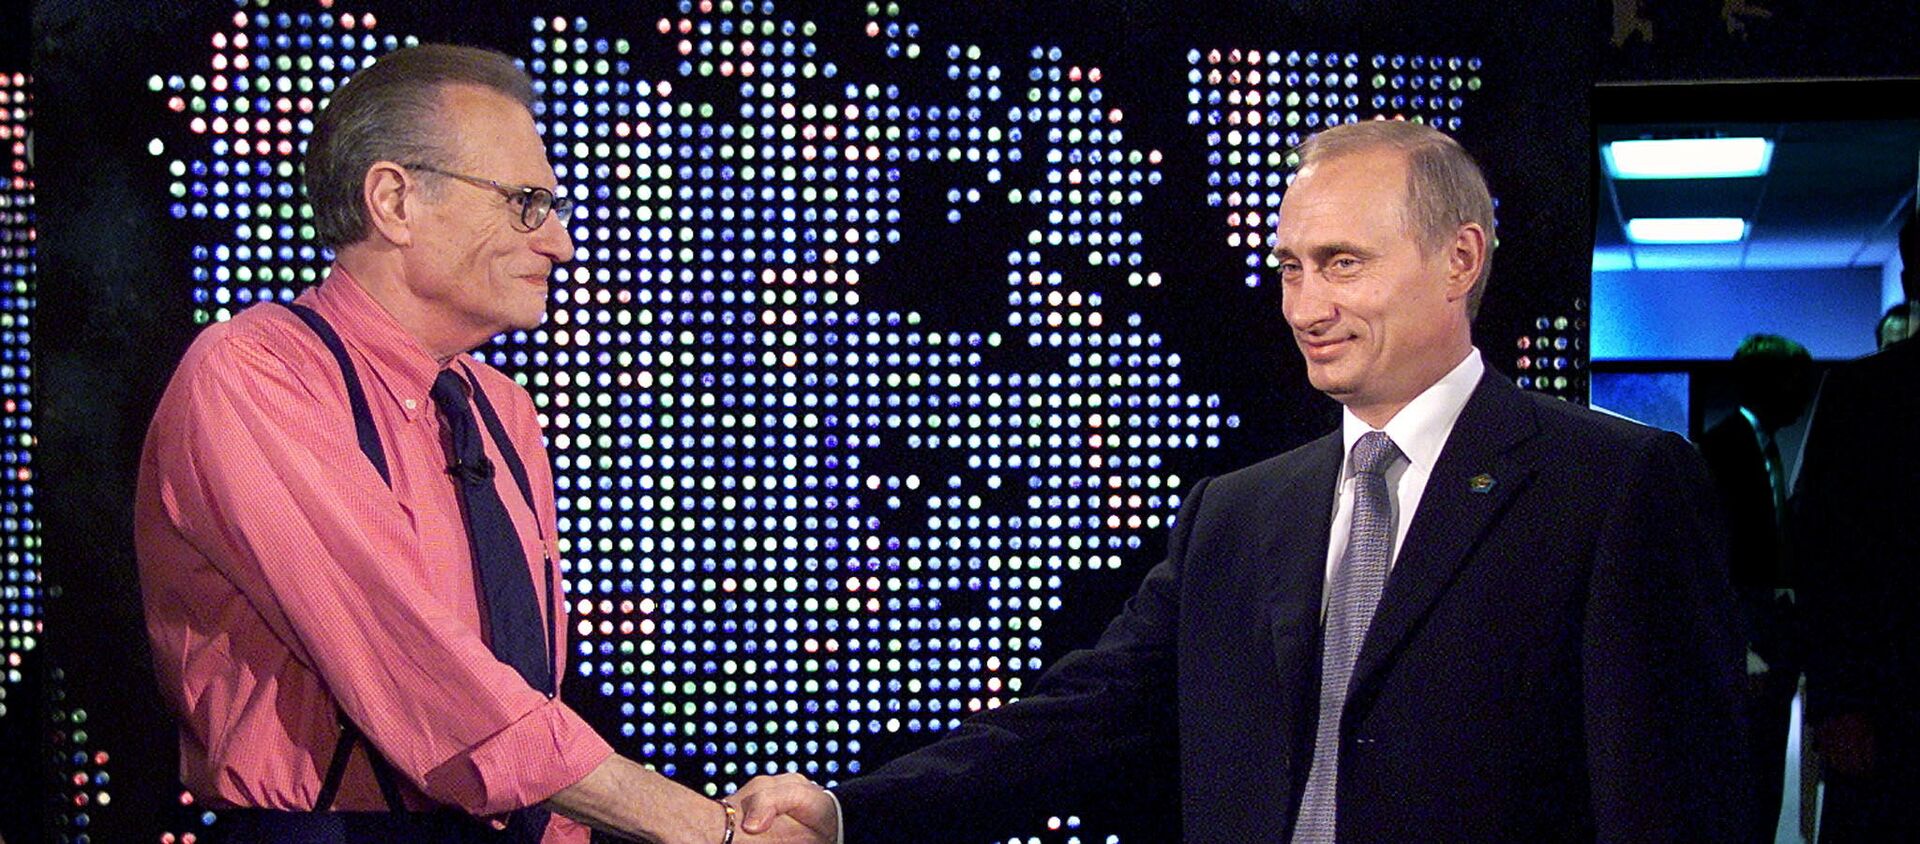 الرئيس الروسي، فلاديمير بوتين، يصافح الإعلامي الأمريكي، لاري كينغ، قبل تسجيل برنامج لاري كينغ شو في نيويورك بالولايات المتحدة في 8 سبتمبر/ أيلول 2000 - سبوتنيك عربي, 1920, 24.01.2021